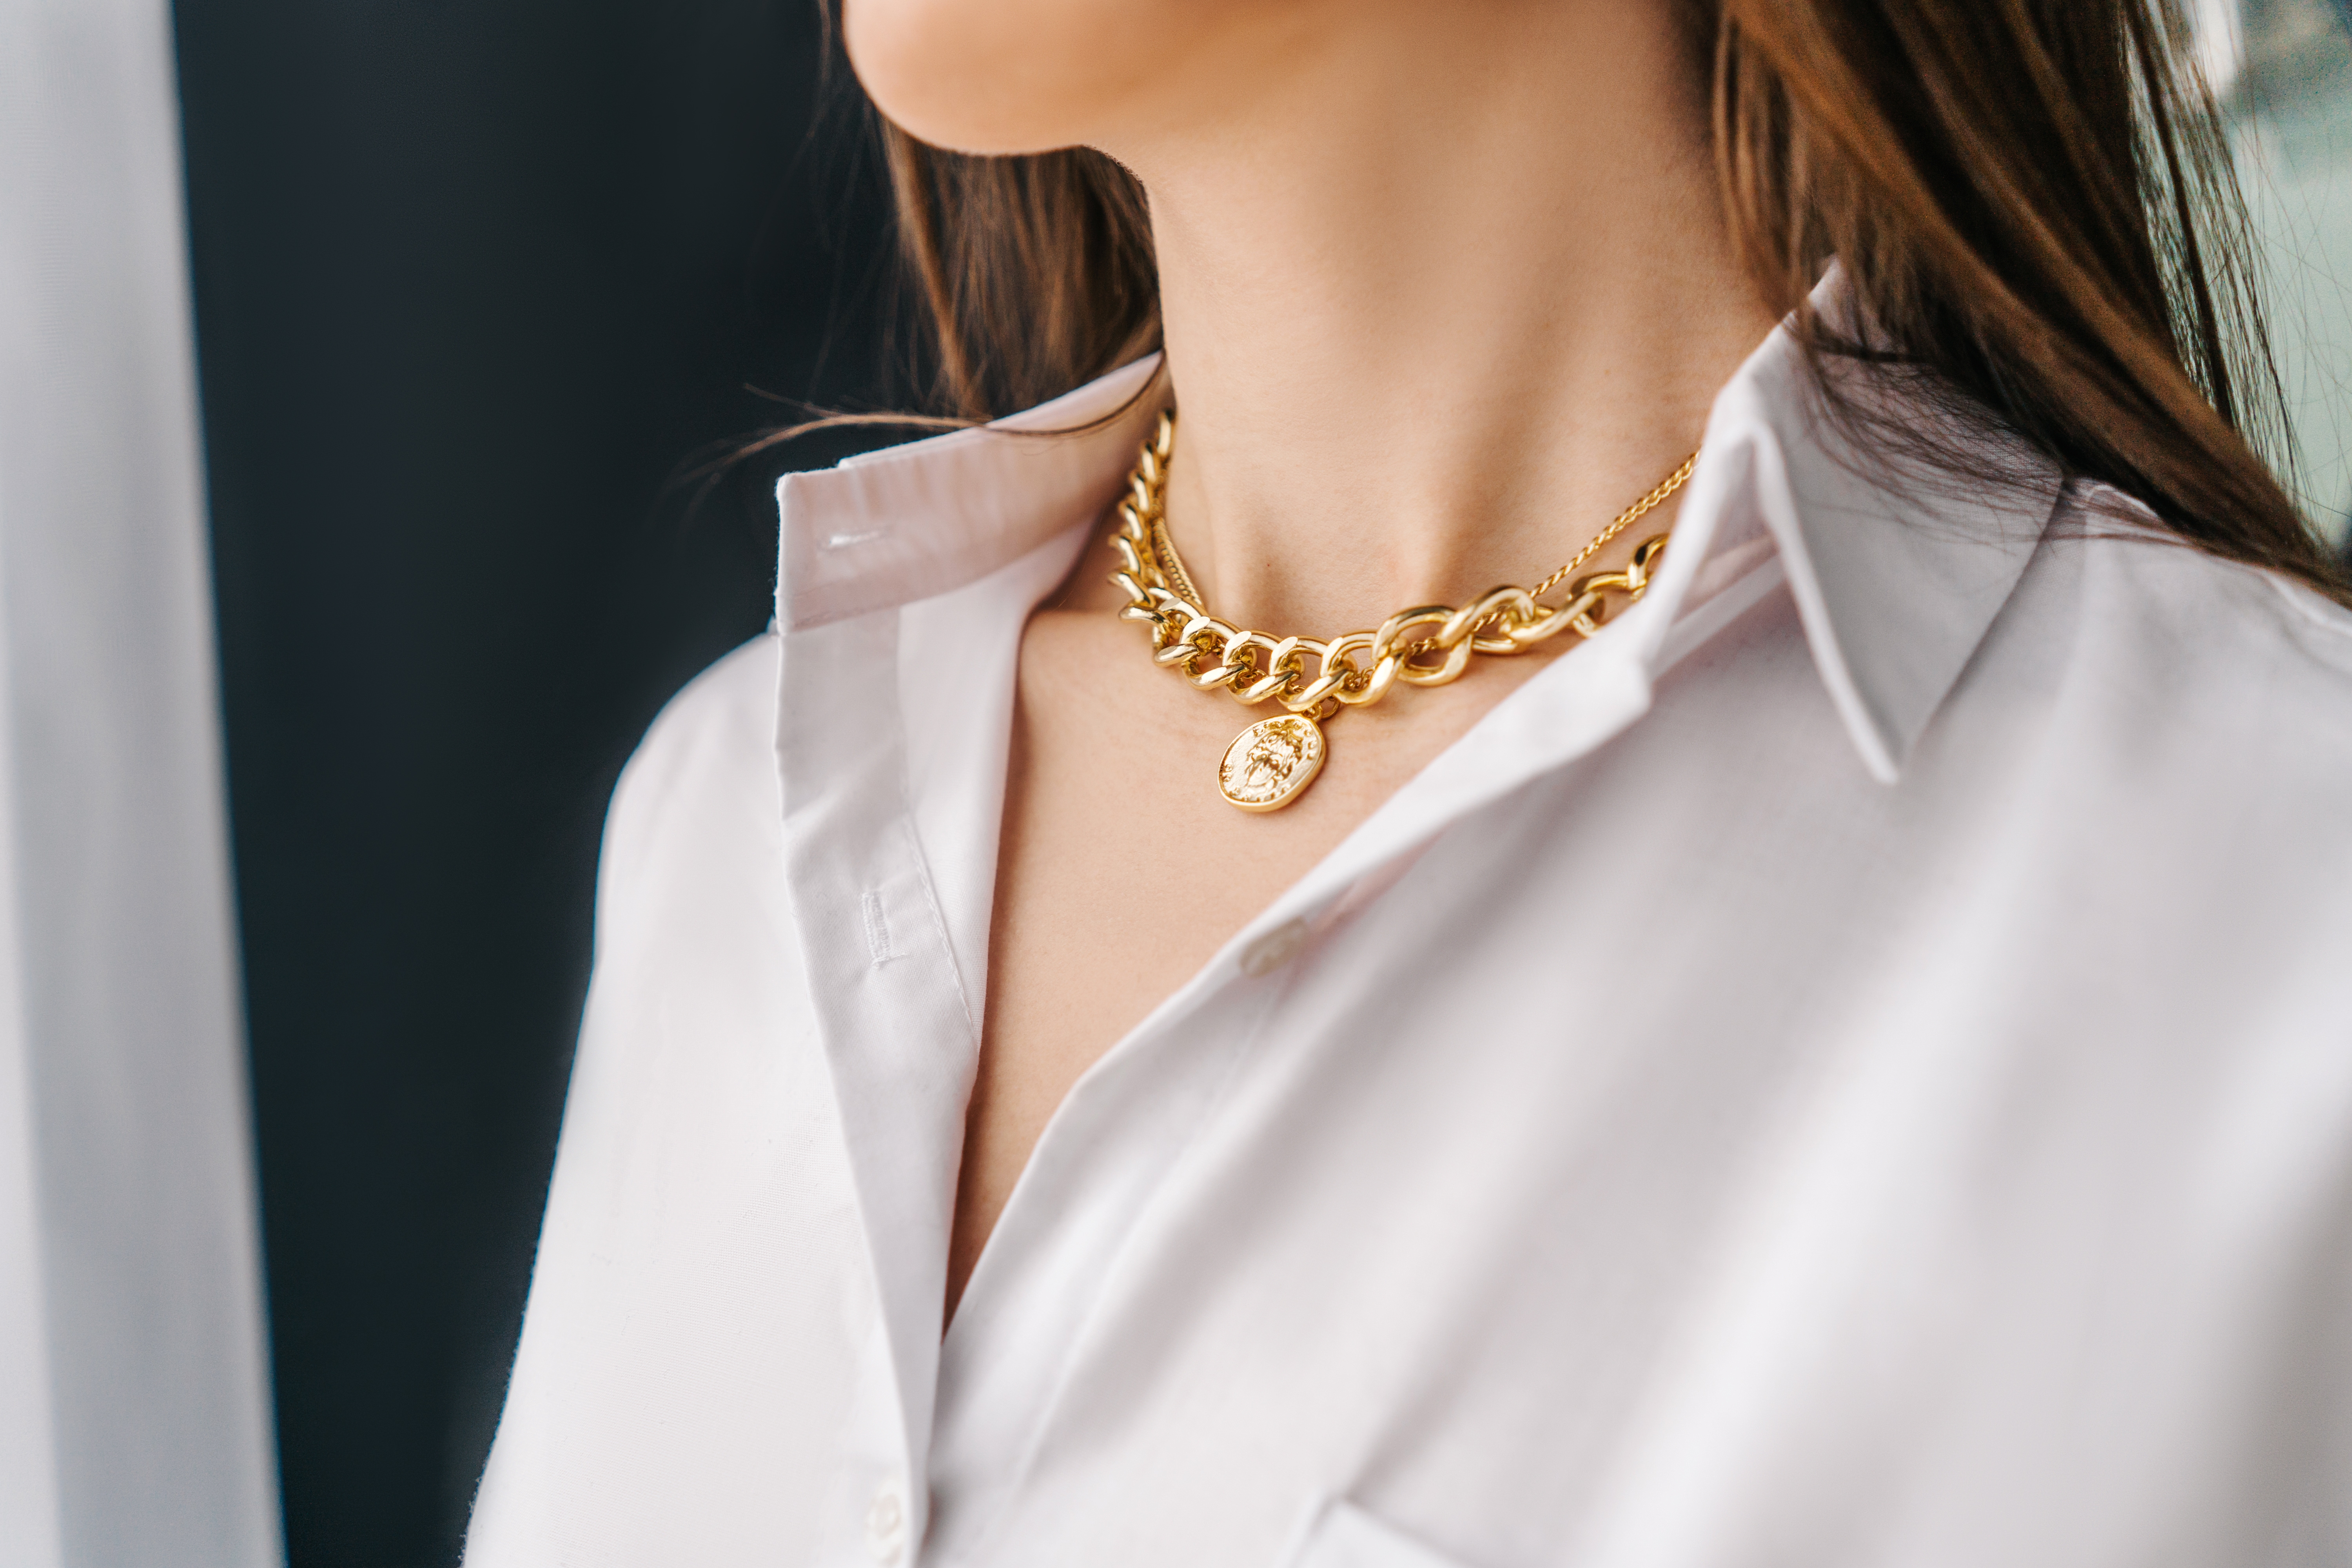 Frau trägt eine Halskette | Quelle: Shutterstock